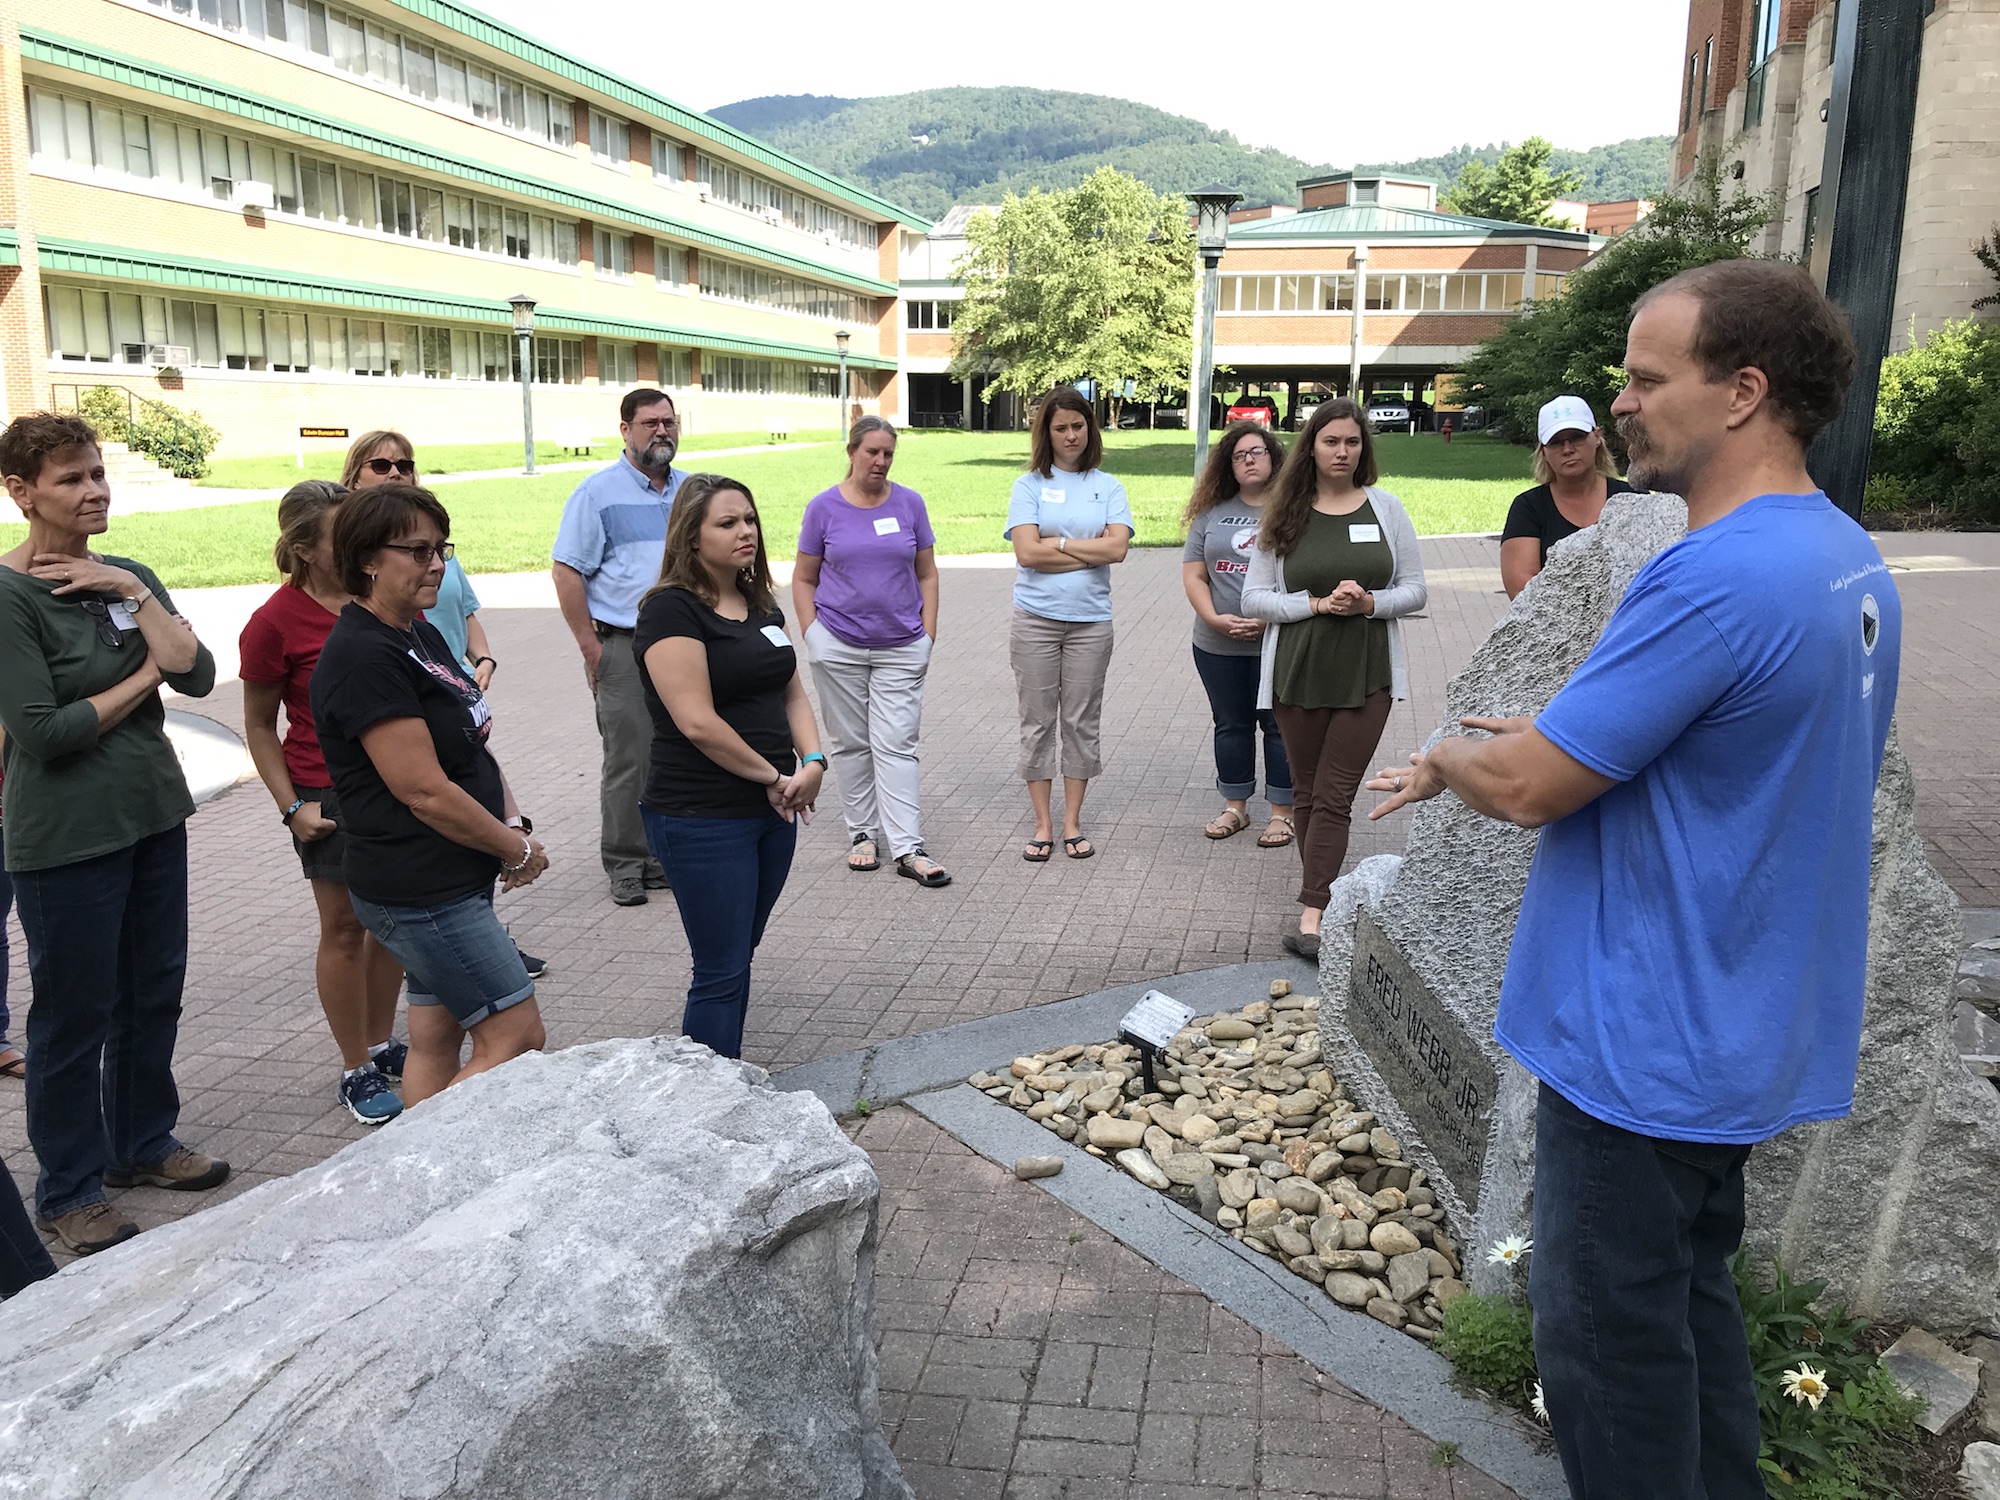 Dr. Heckert gives the teachers a tour of the Rock Garden